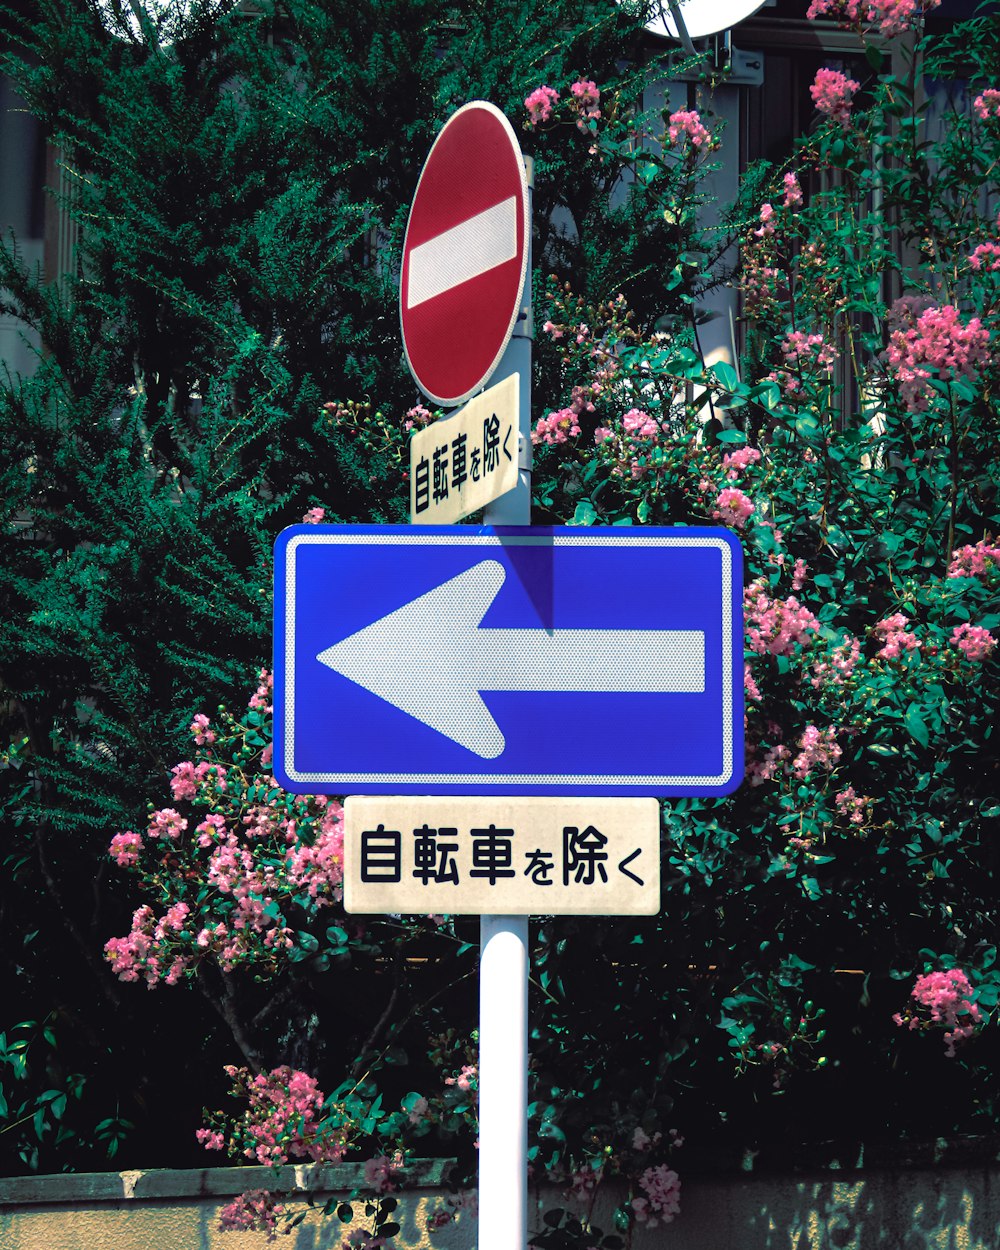 un cartello stradale con una freccia che punta a sinistra